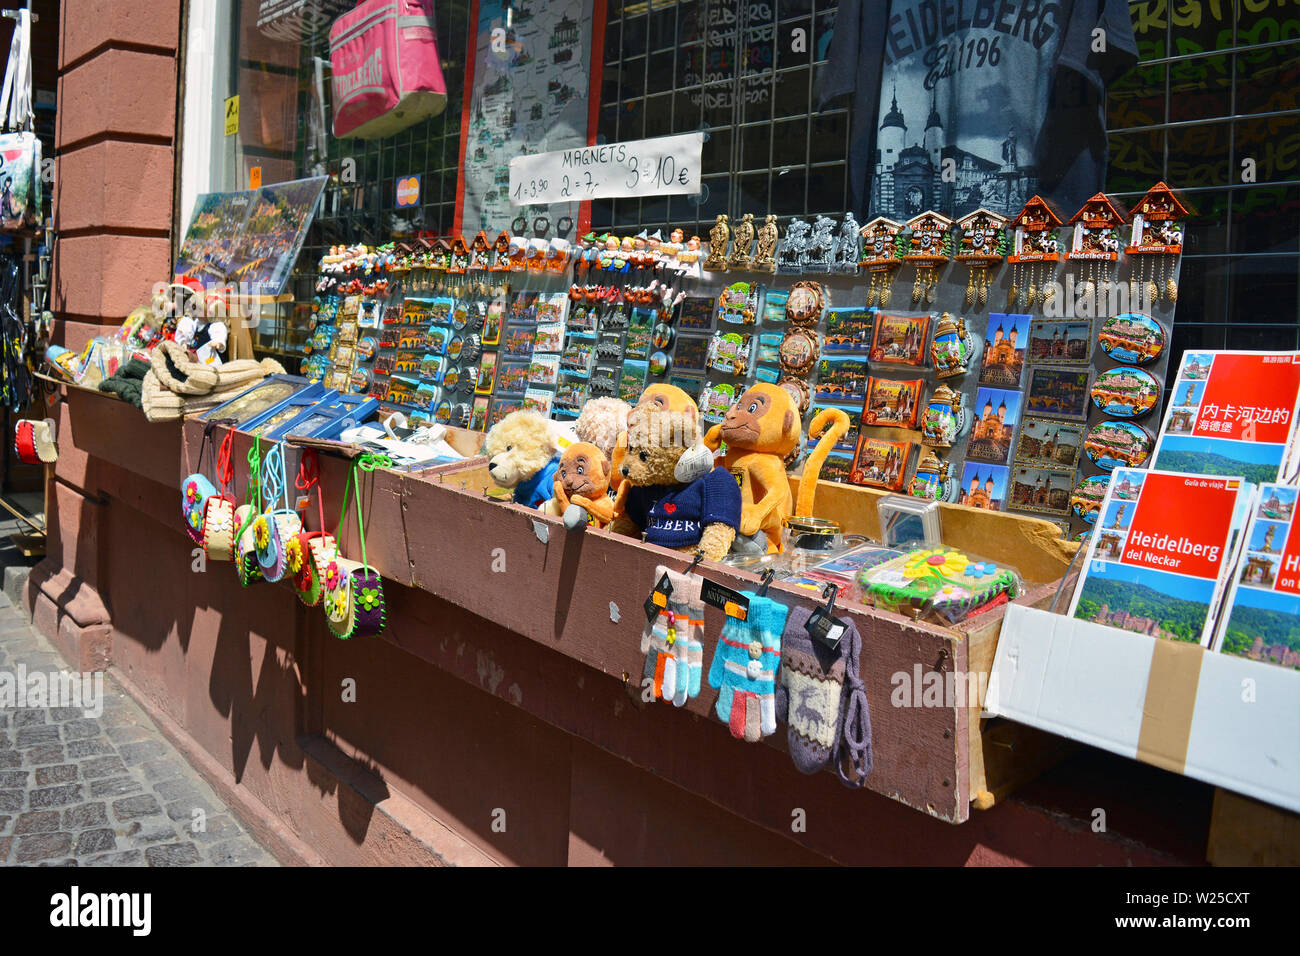 Negozi di souvenir che offre vari locali ninnoli come magneti per il frigo e giocattoli di peluche in histrocail centro storico di Heidelberg, Germania Foto Stock